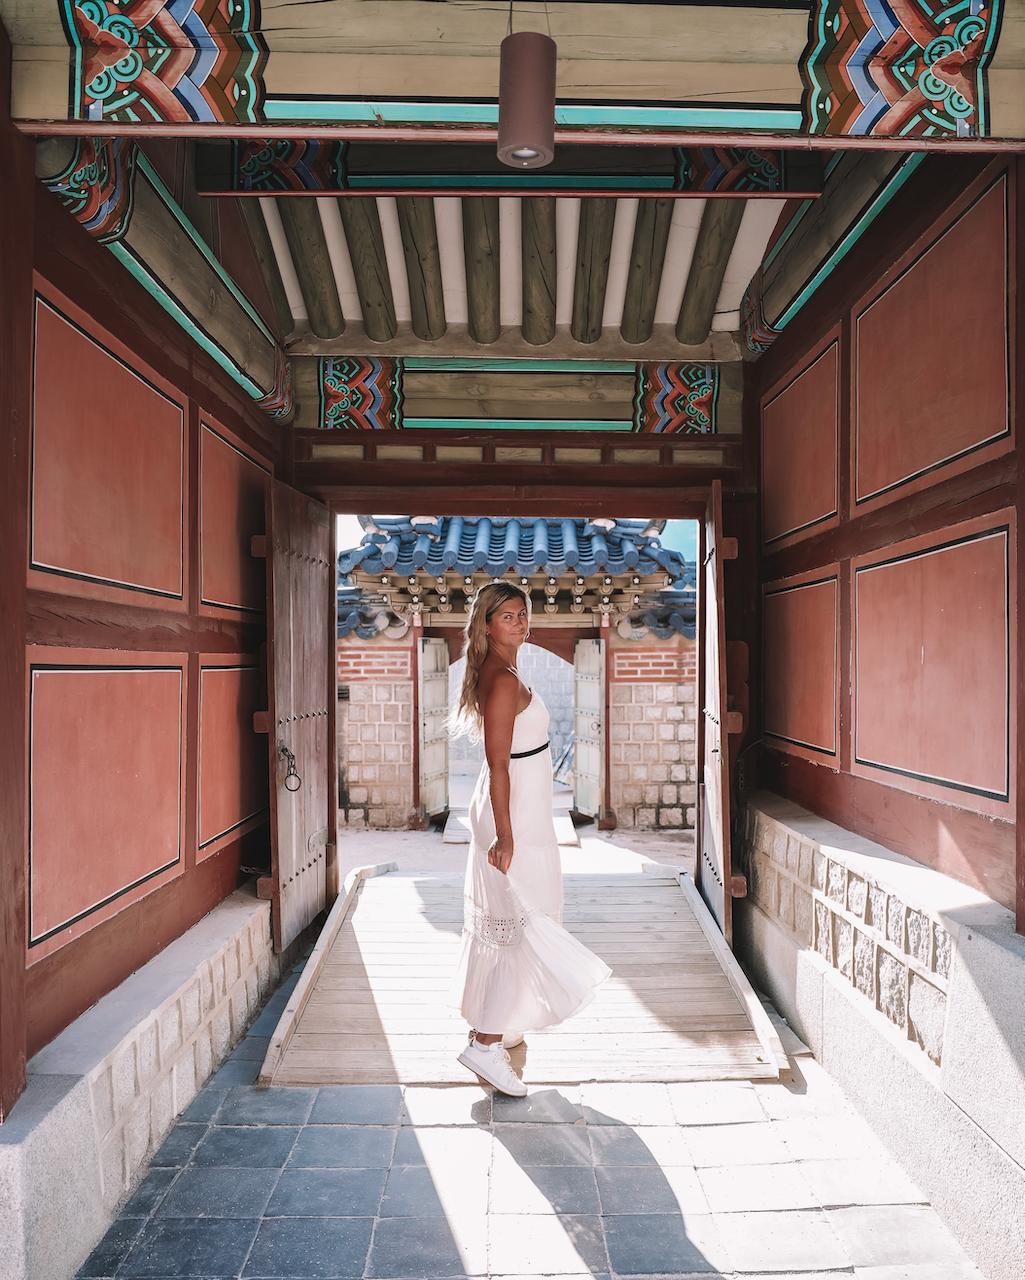 Jeune femme blonde se baladant - Gyeongbokgung Palace - Séoul - Corée du Sud